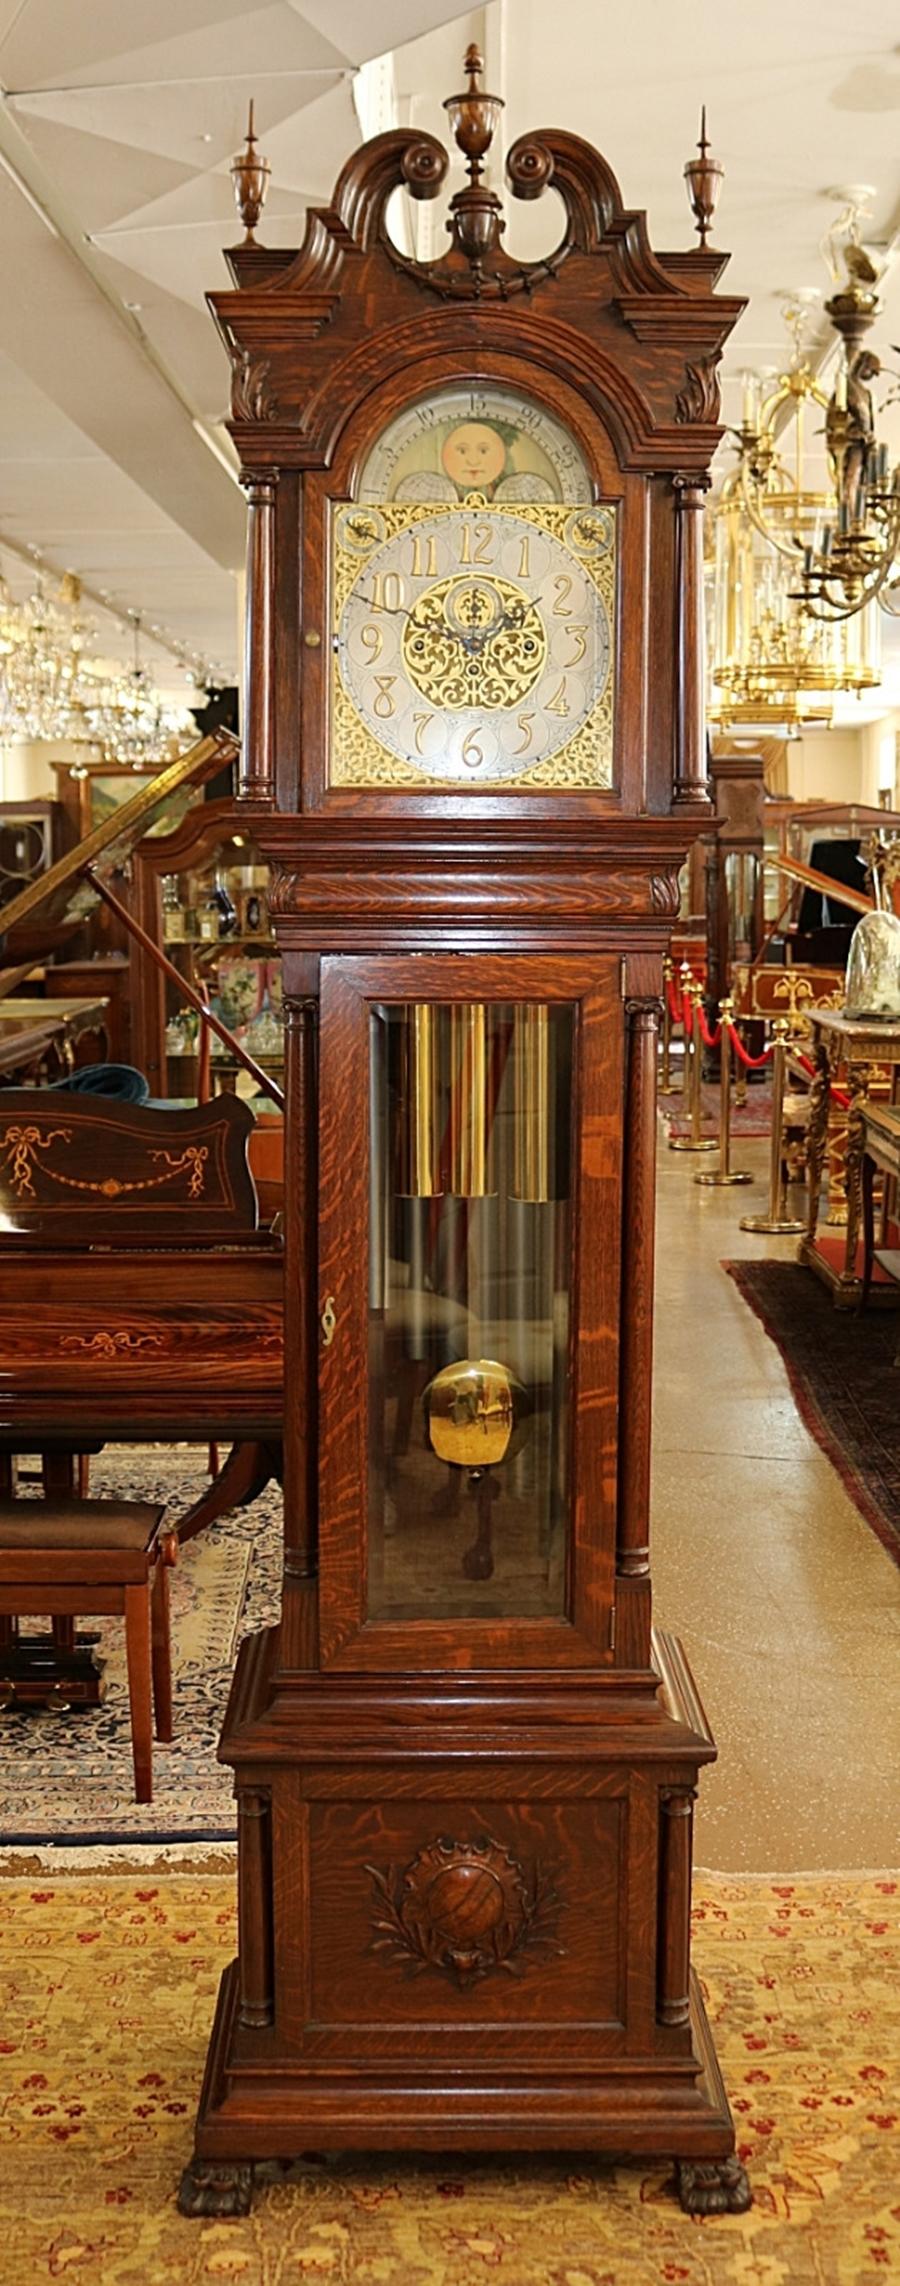 John Wanamaker Philadelphia Oaks 9 Tube Grandfather Tall Case Clock  Circa 1904

Dimensions : 102 haut X 28 large X 19 profond

Cette magnifique horloge a été fabriquée au début du 20e siècle et vendue par John Wanamaker à Philadelphie. L'horloge